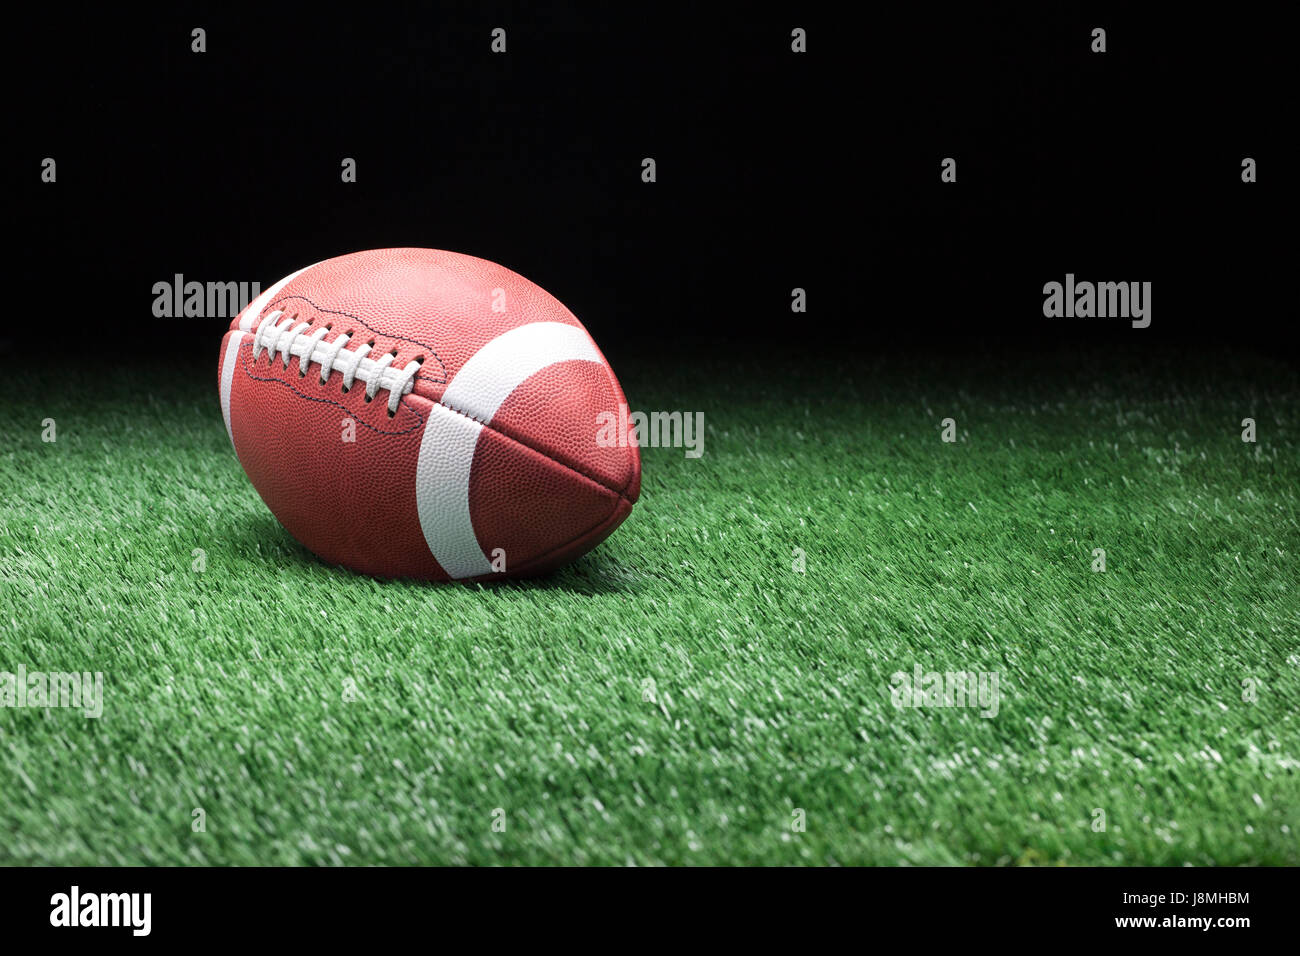 College football style sur pelouse sur un fond sombre Banque D'Images